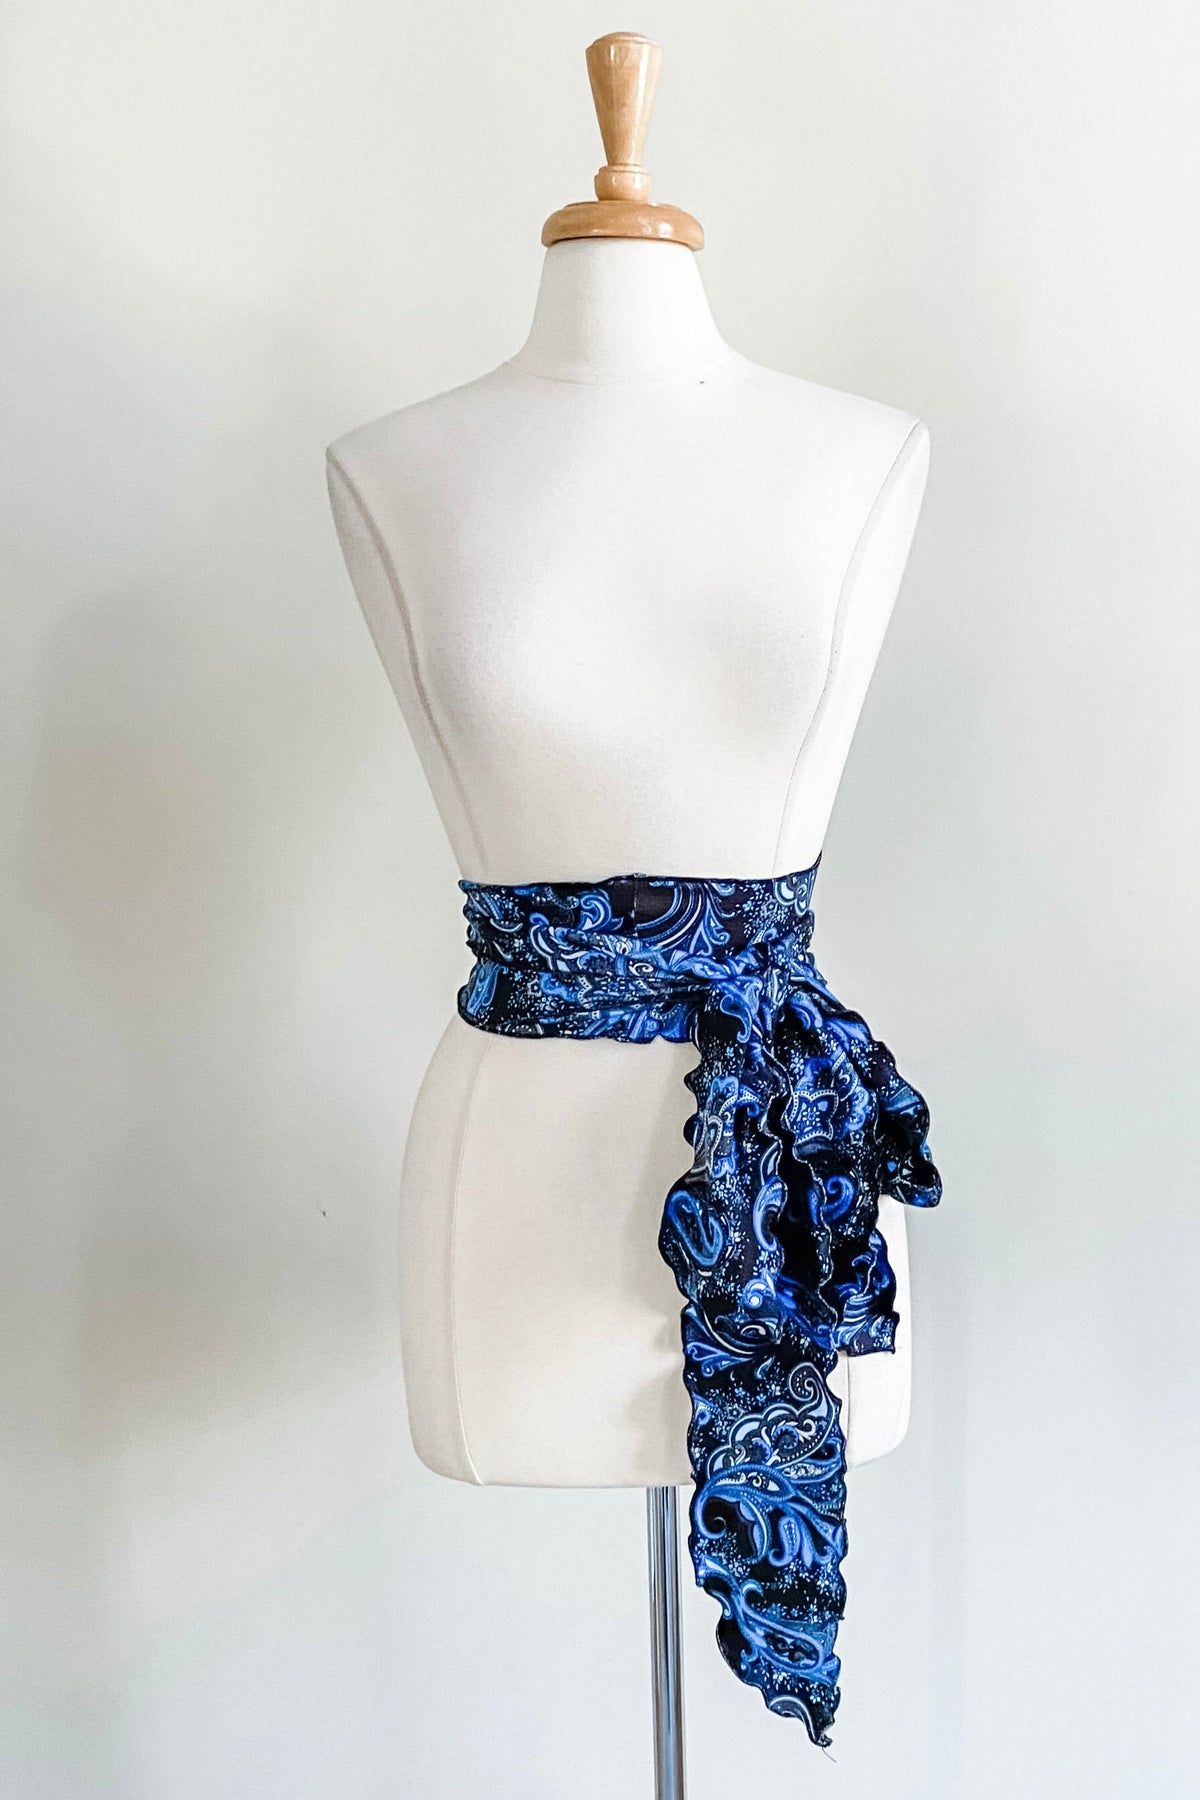 Diane Kroe Sash Belt (Blue Paisley) - The Classic Capsule Collection